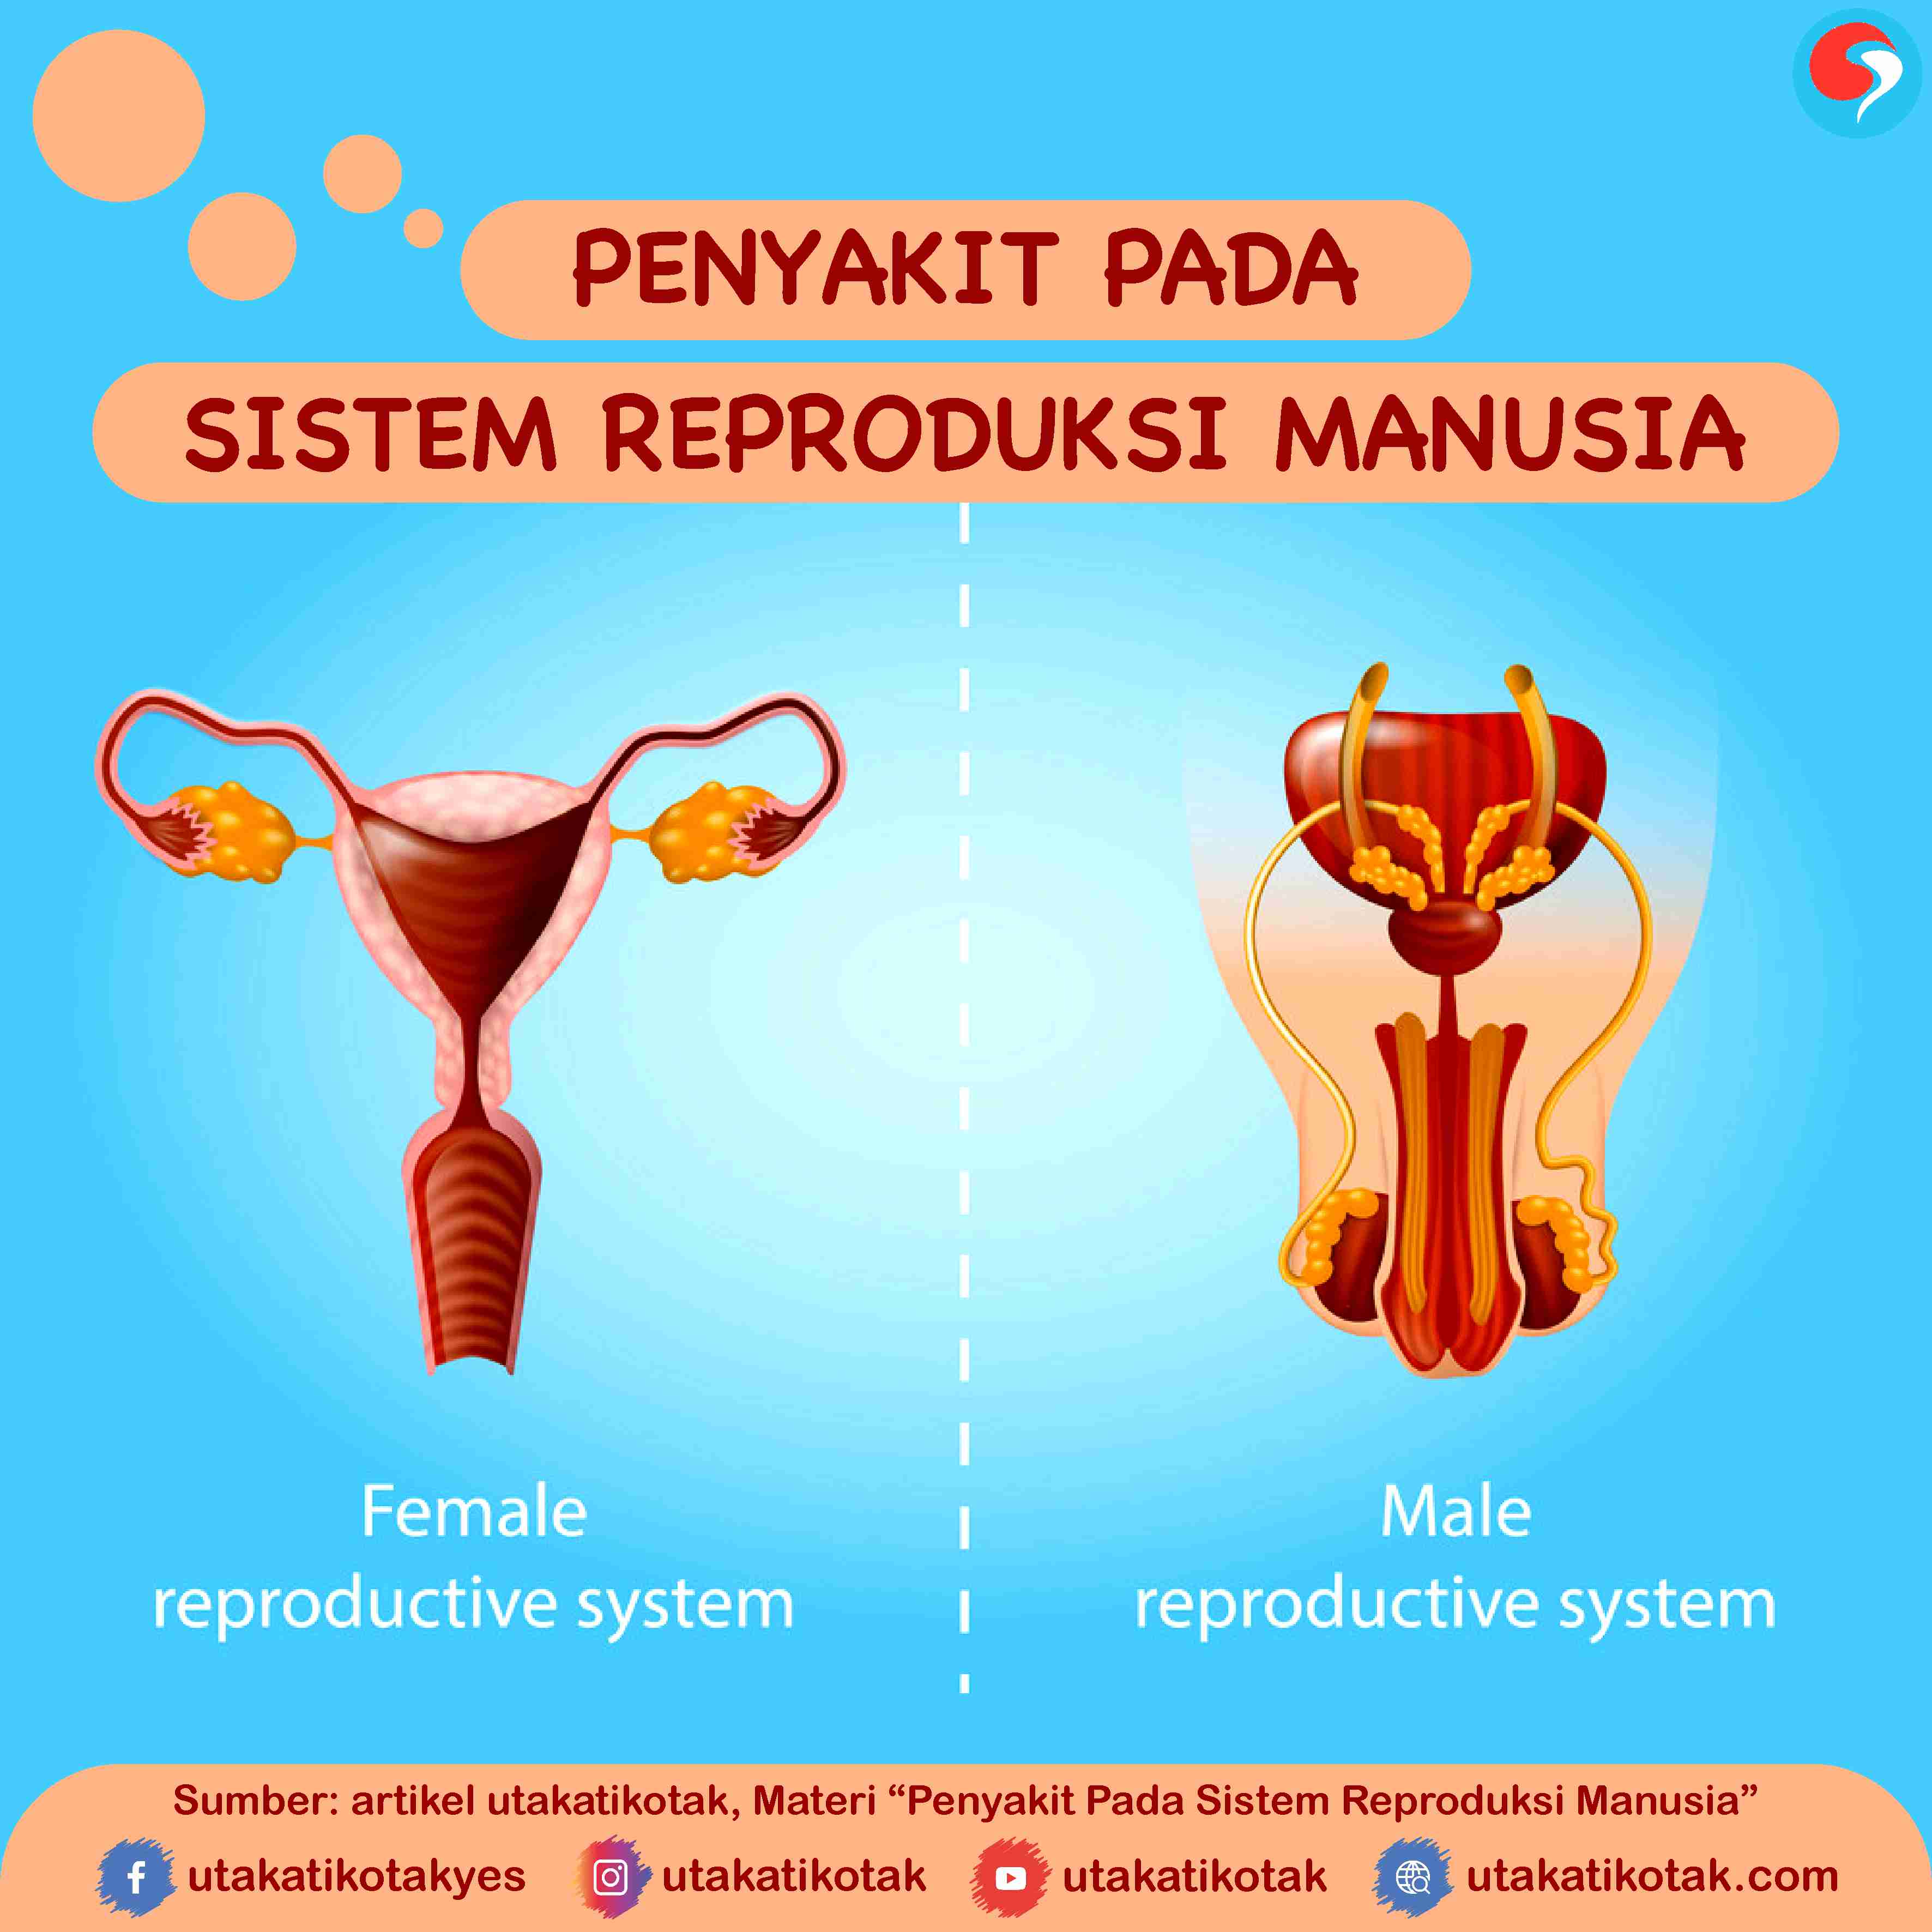 Gangguan yang terjadi pada sistem reproduksi pria yang disebabkan oleh virus herpes adalah